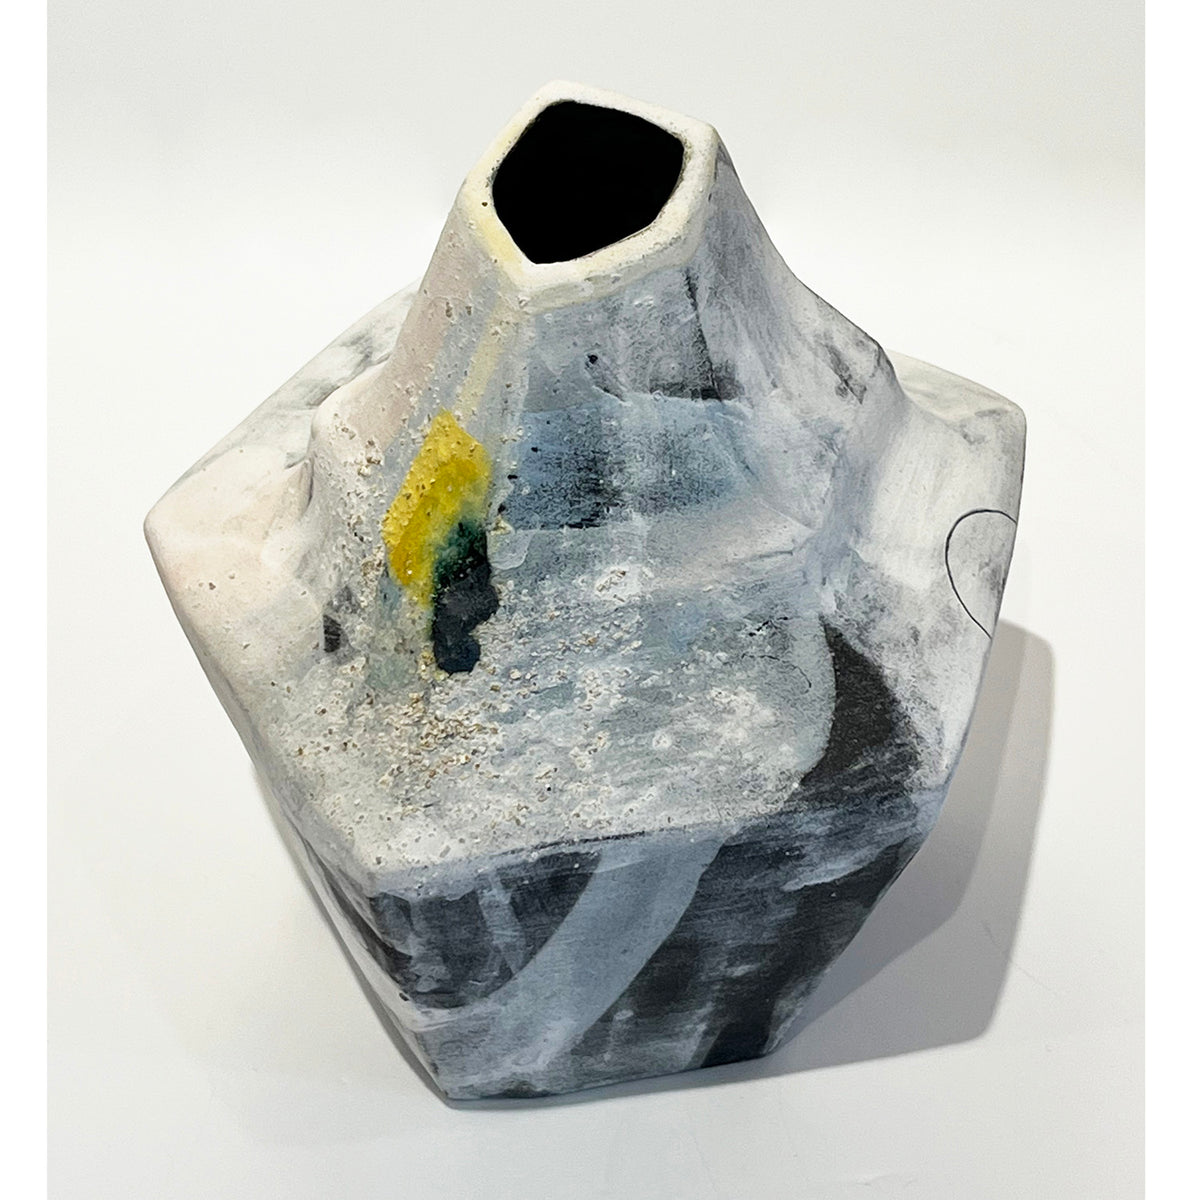 Mariana Bolanos - Small White Vase